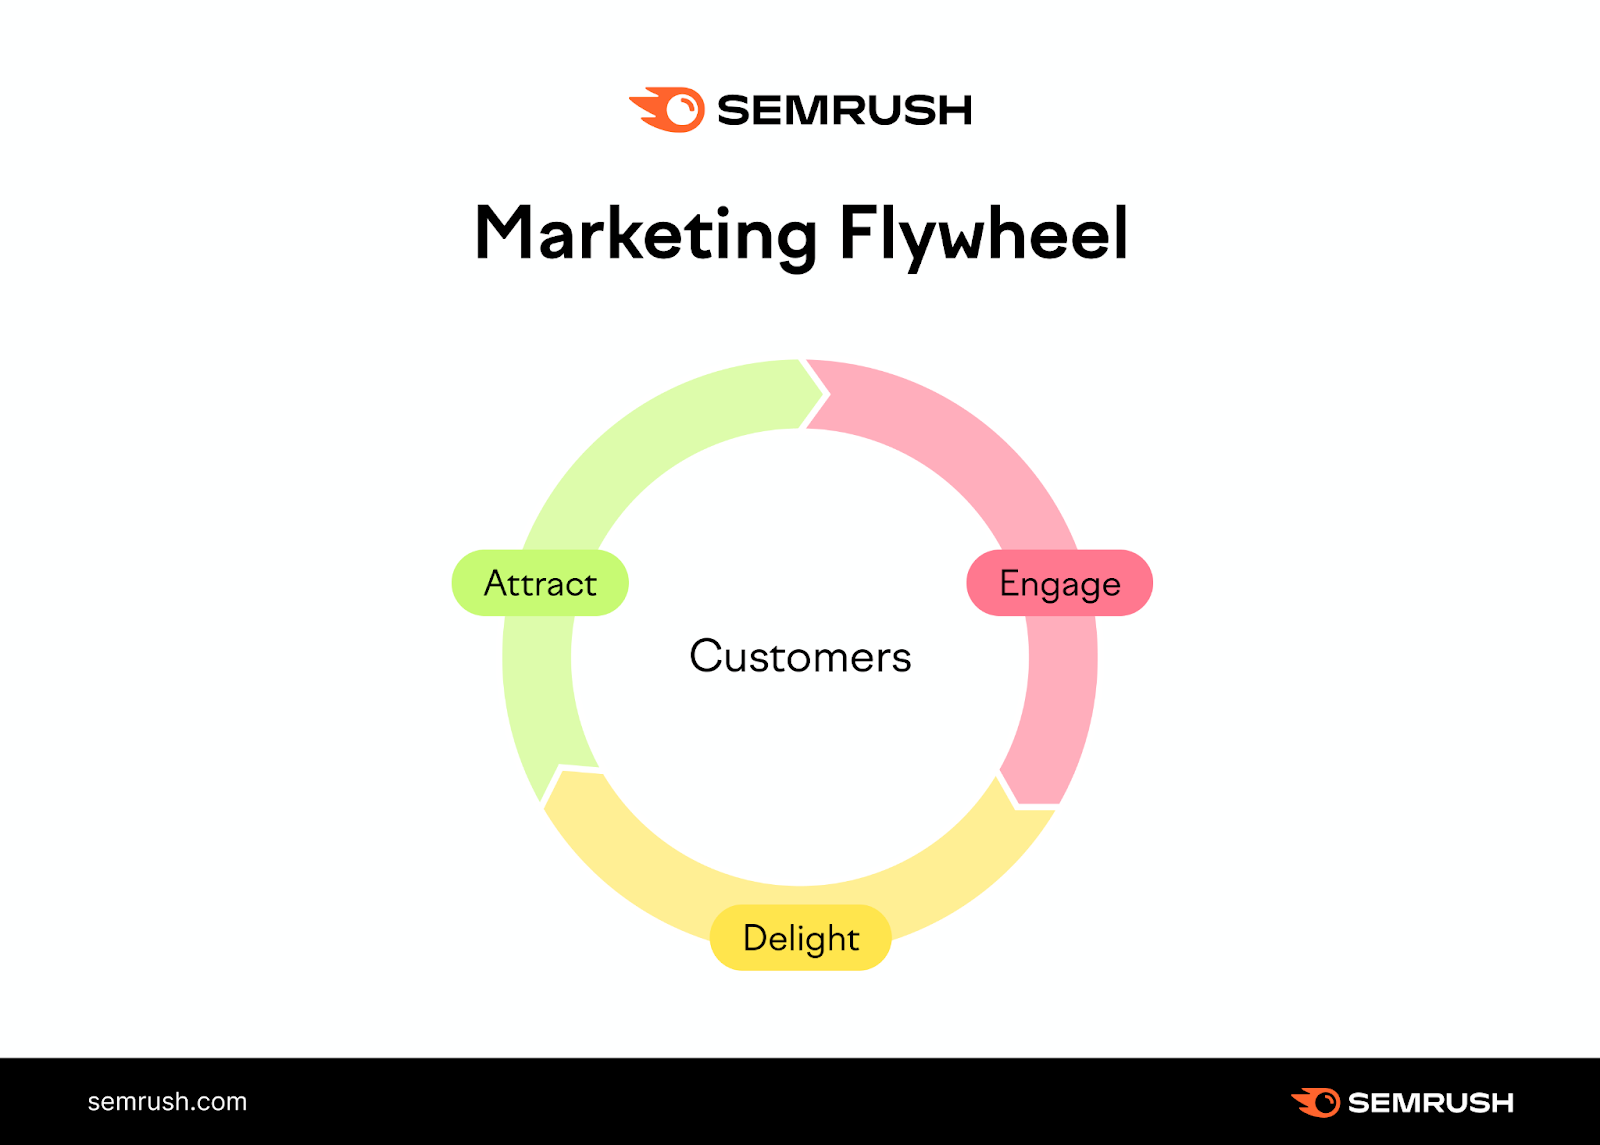 An image showing "Marketing flywheel"